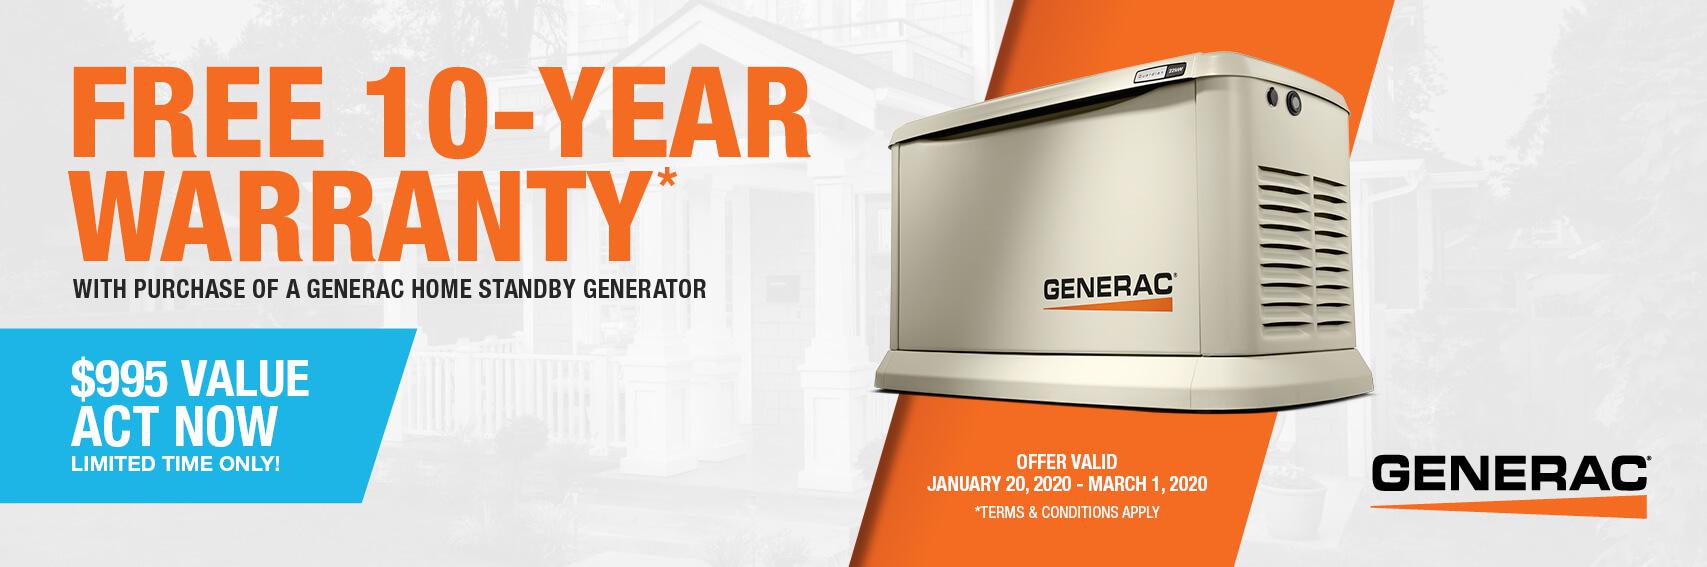 Homestandby Generator Deal | Warranty Offer | Generac Dealer | Houston, TX